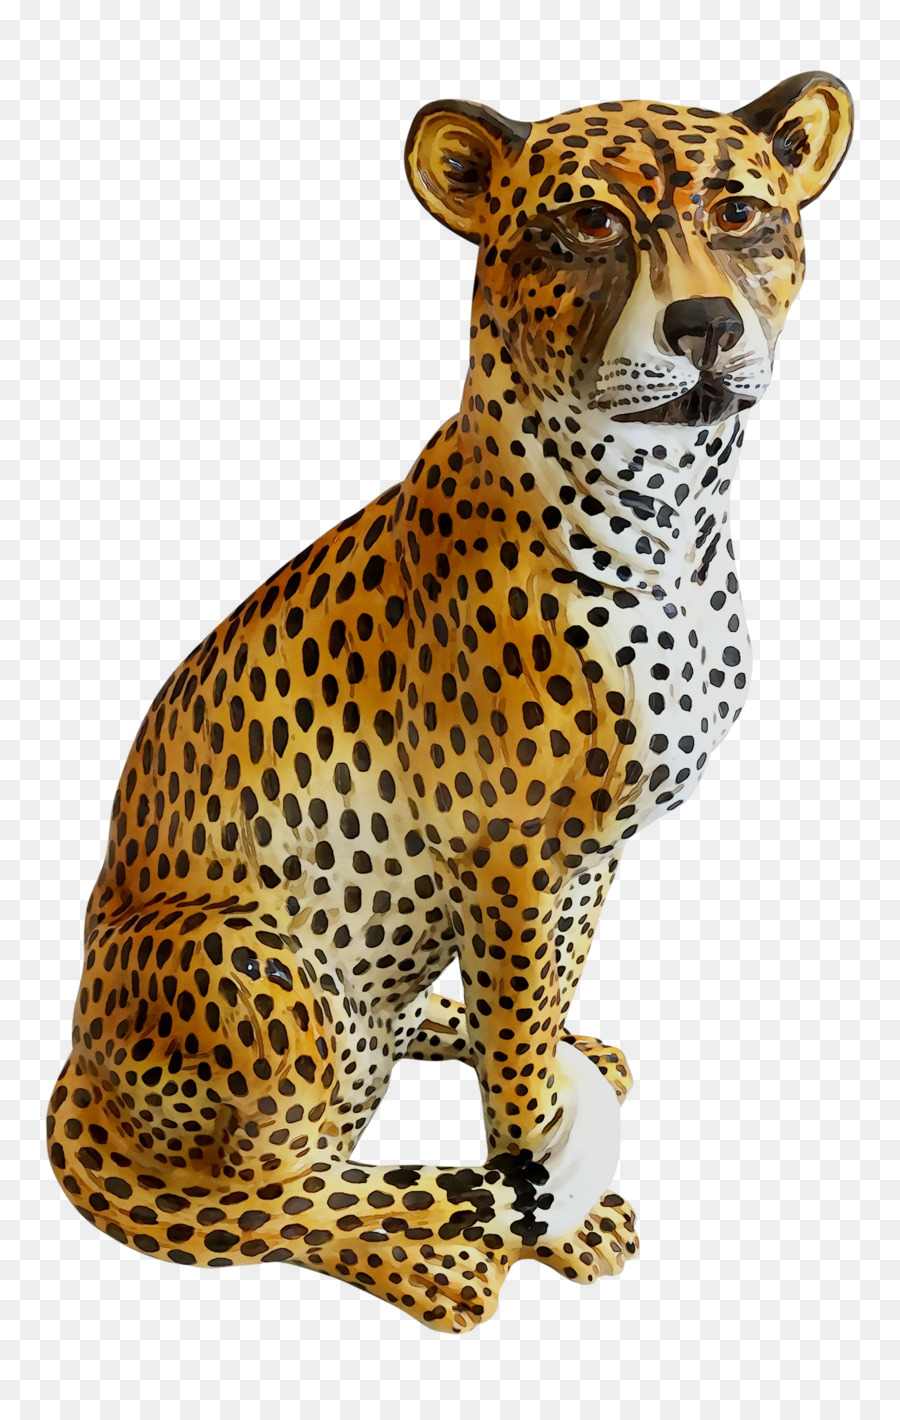 Cheetah Leopard Jaguar Cat Terrestrial animal -  png download - 1999*3121 - Free Transparent Cheetah png Download.